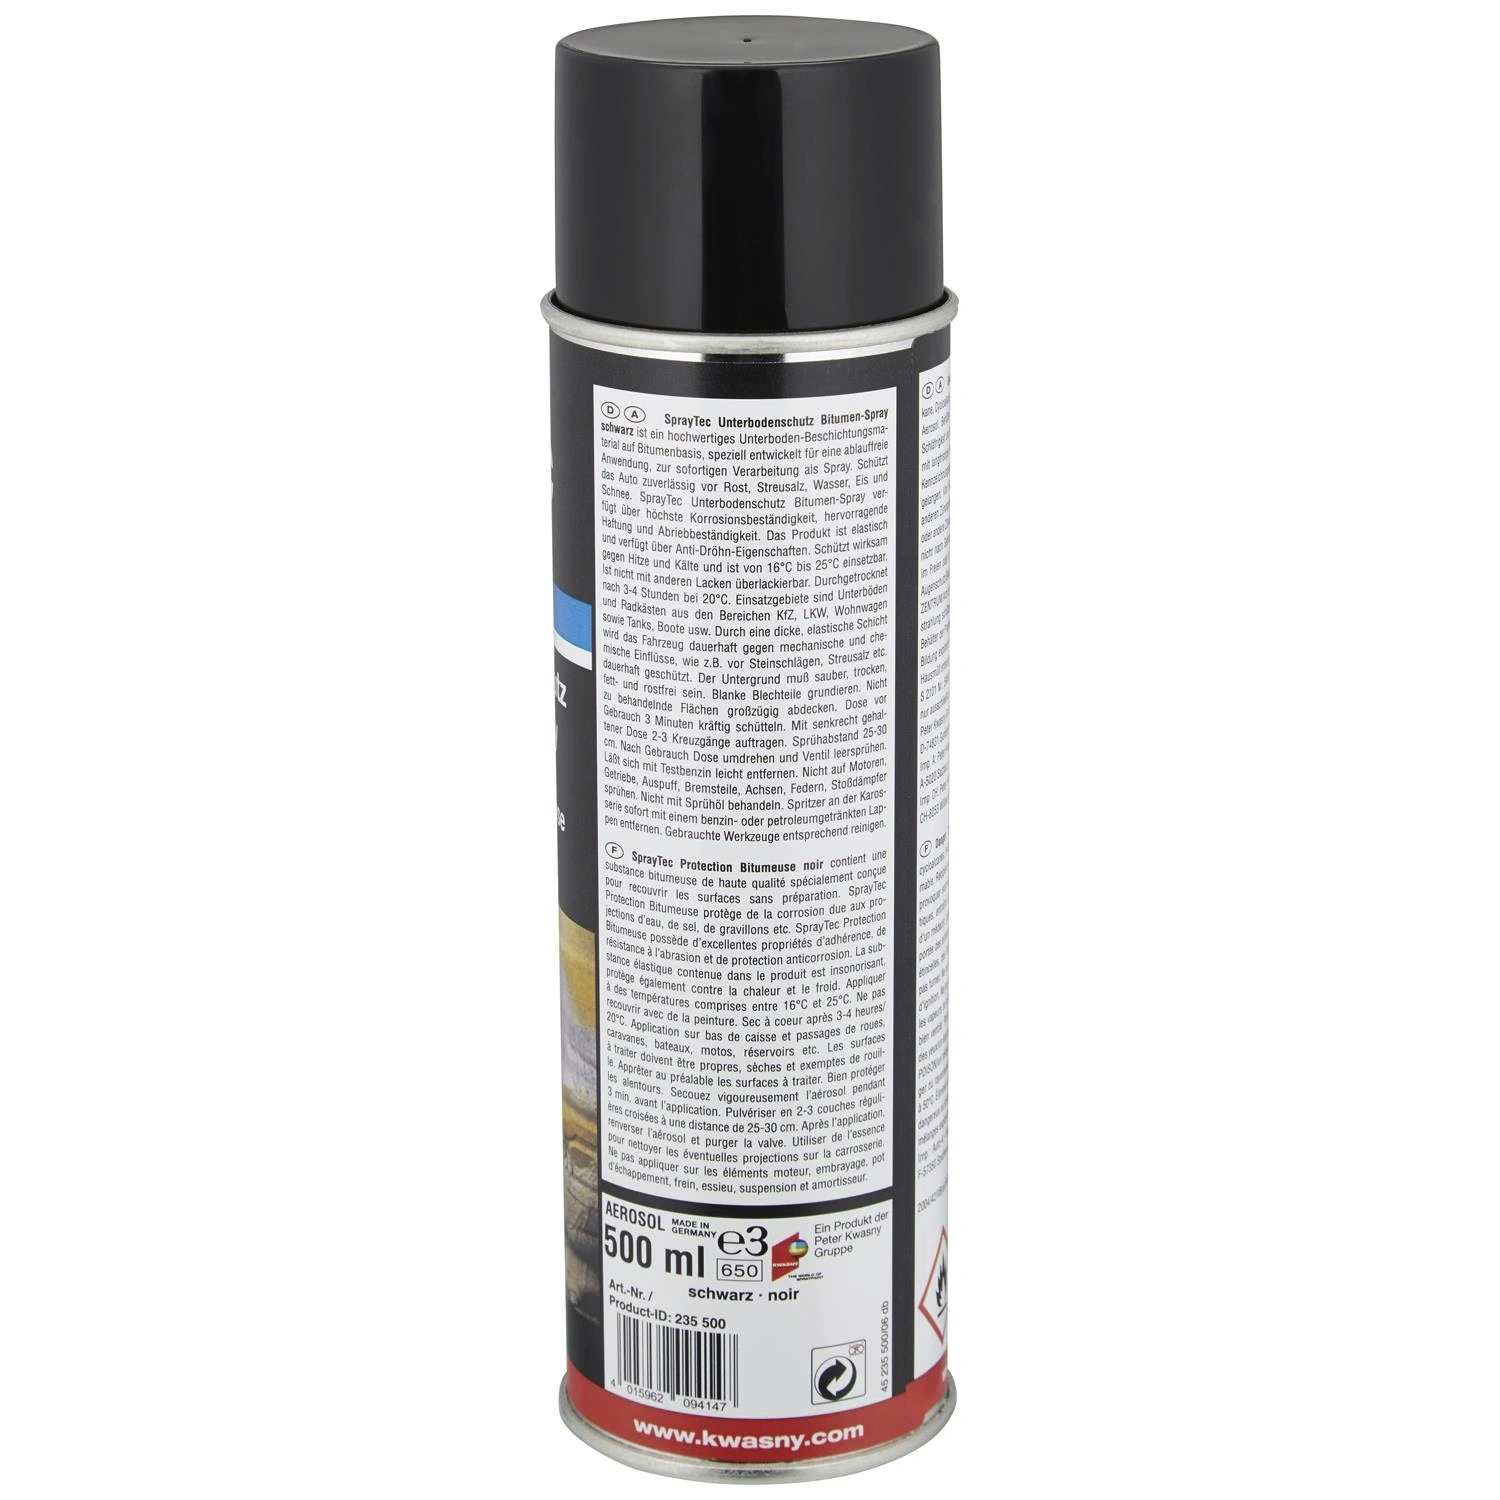 SprayTEC Sprühlack »SprayTEC«, 500 ml, schwarz 